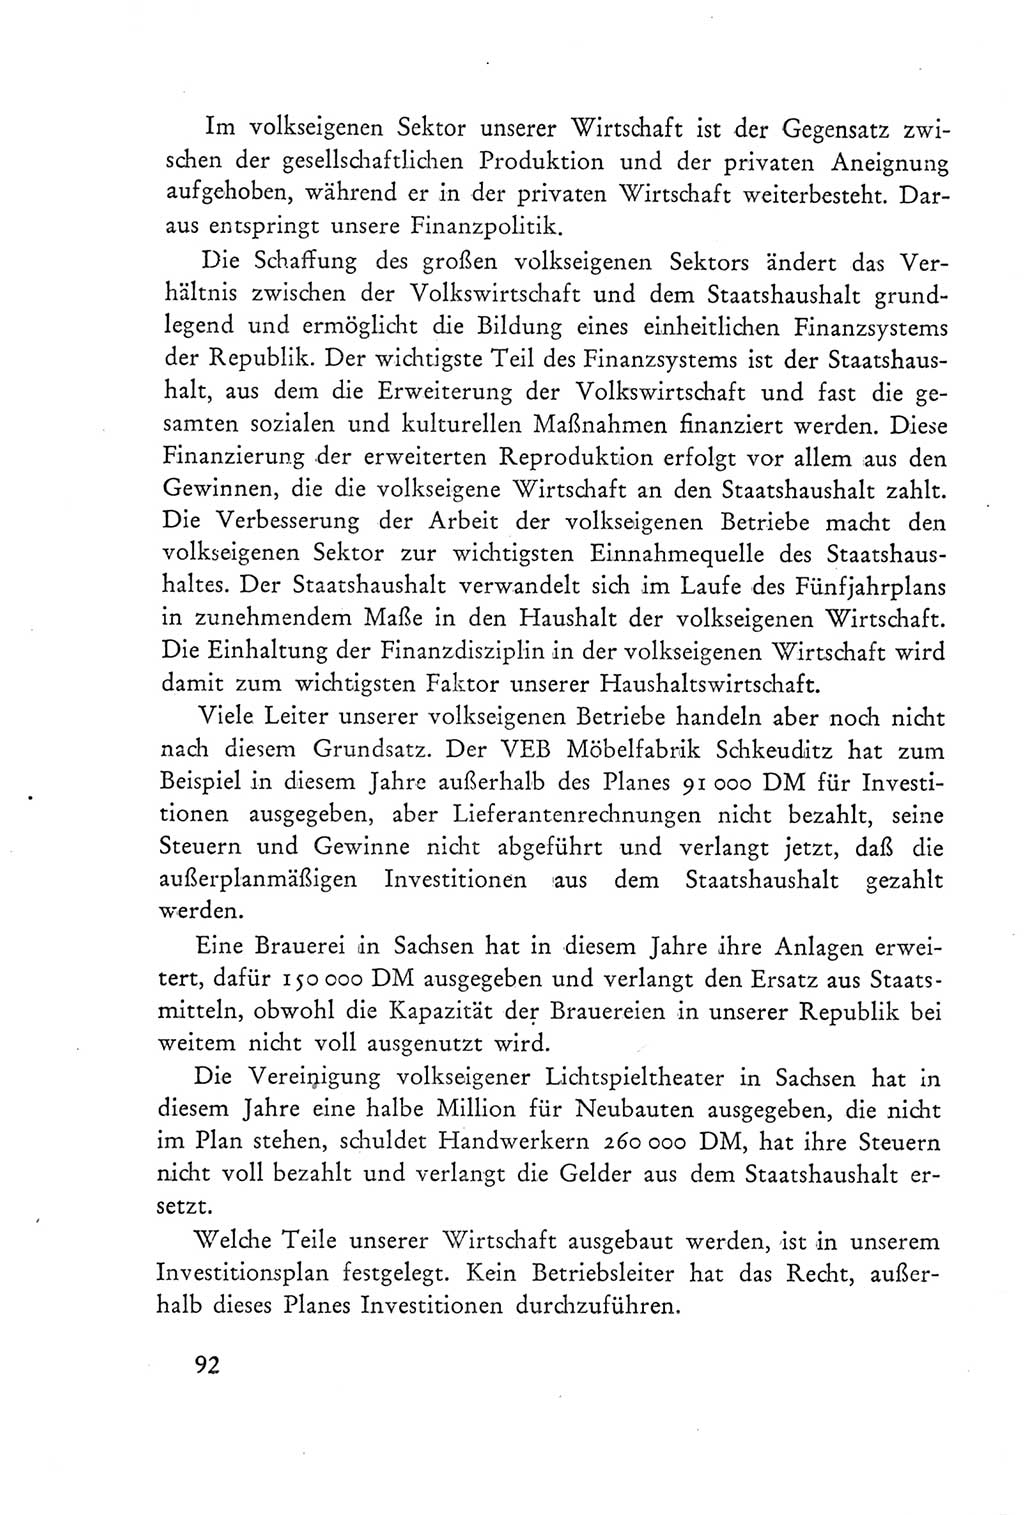 Protokoll der Verhandlungen des Ⅲ. Parteitages der Sozialistischen Einheitspartei Deutschlands (SED) [Deutsche Demokratische Republik (DDR)] 1950, Band 2, Seite 92 (Prot. Verh. Ⅲ. PT SED DDR 1950, Bd. 2, S. 92)